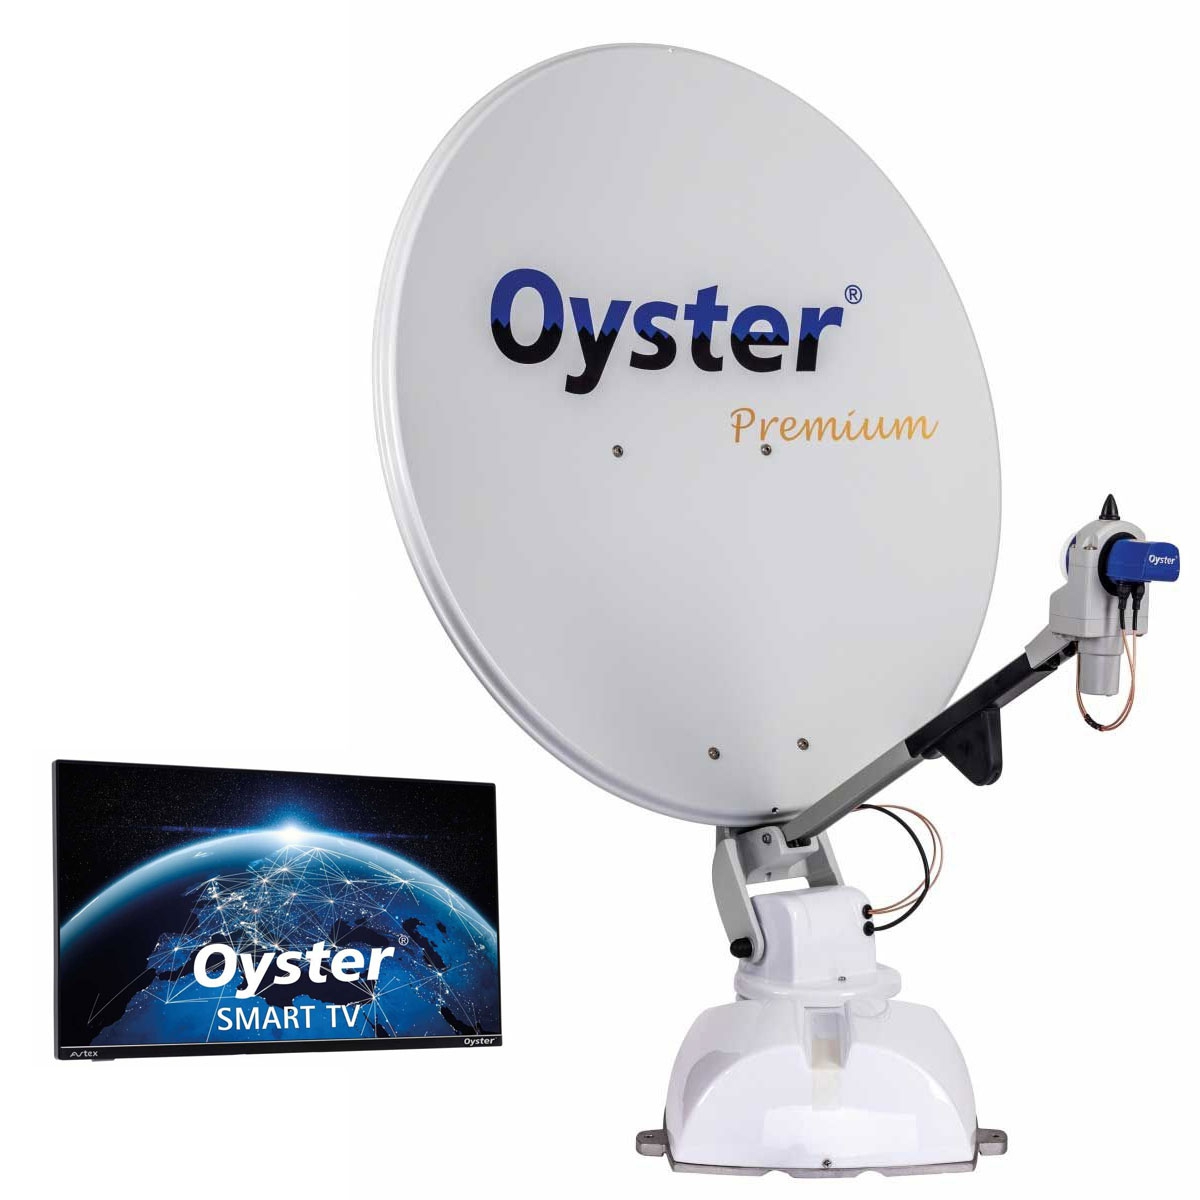 TEN HAAFT Oyster 65 Premium 21-5 Smart TV - 89019 - 88292